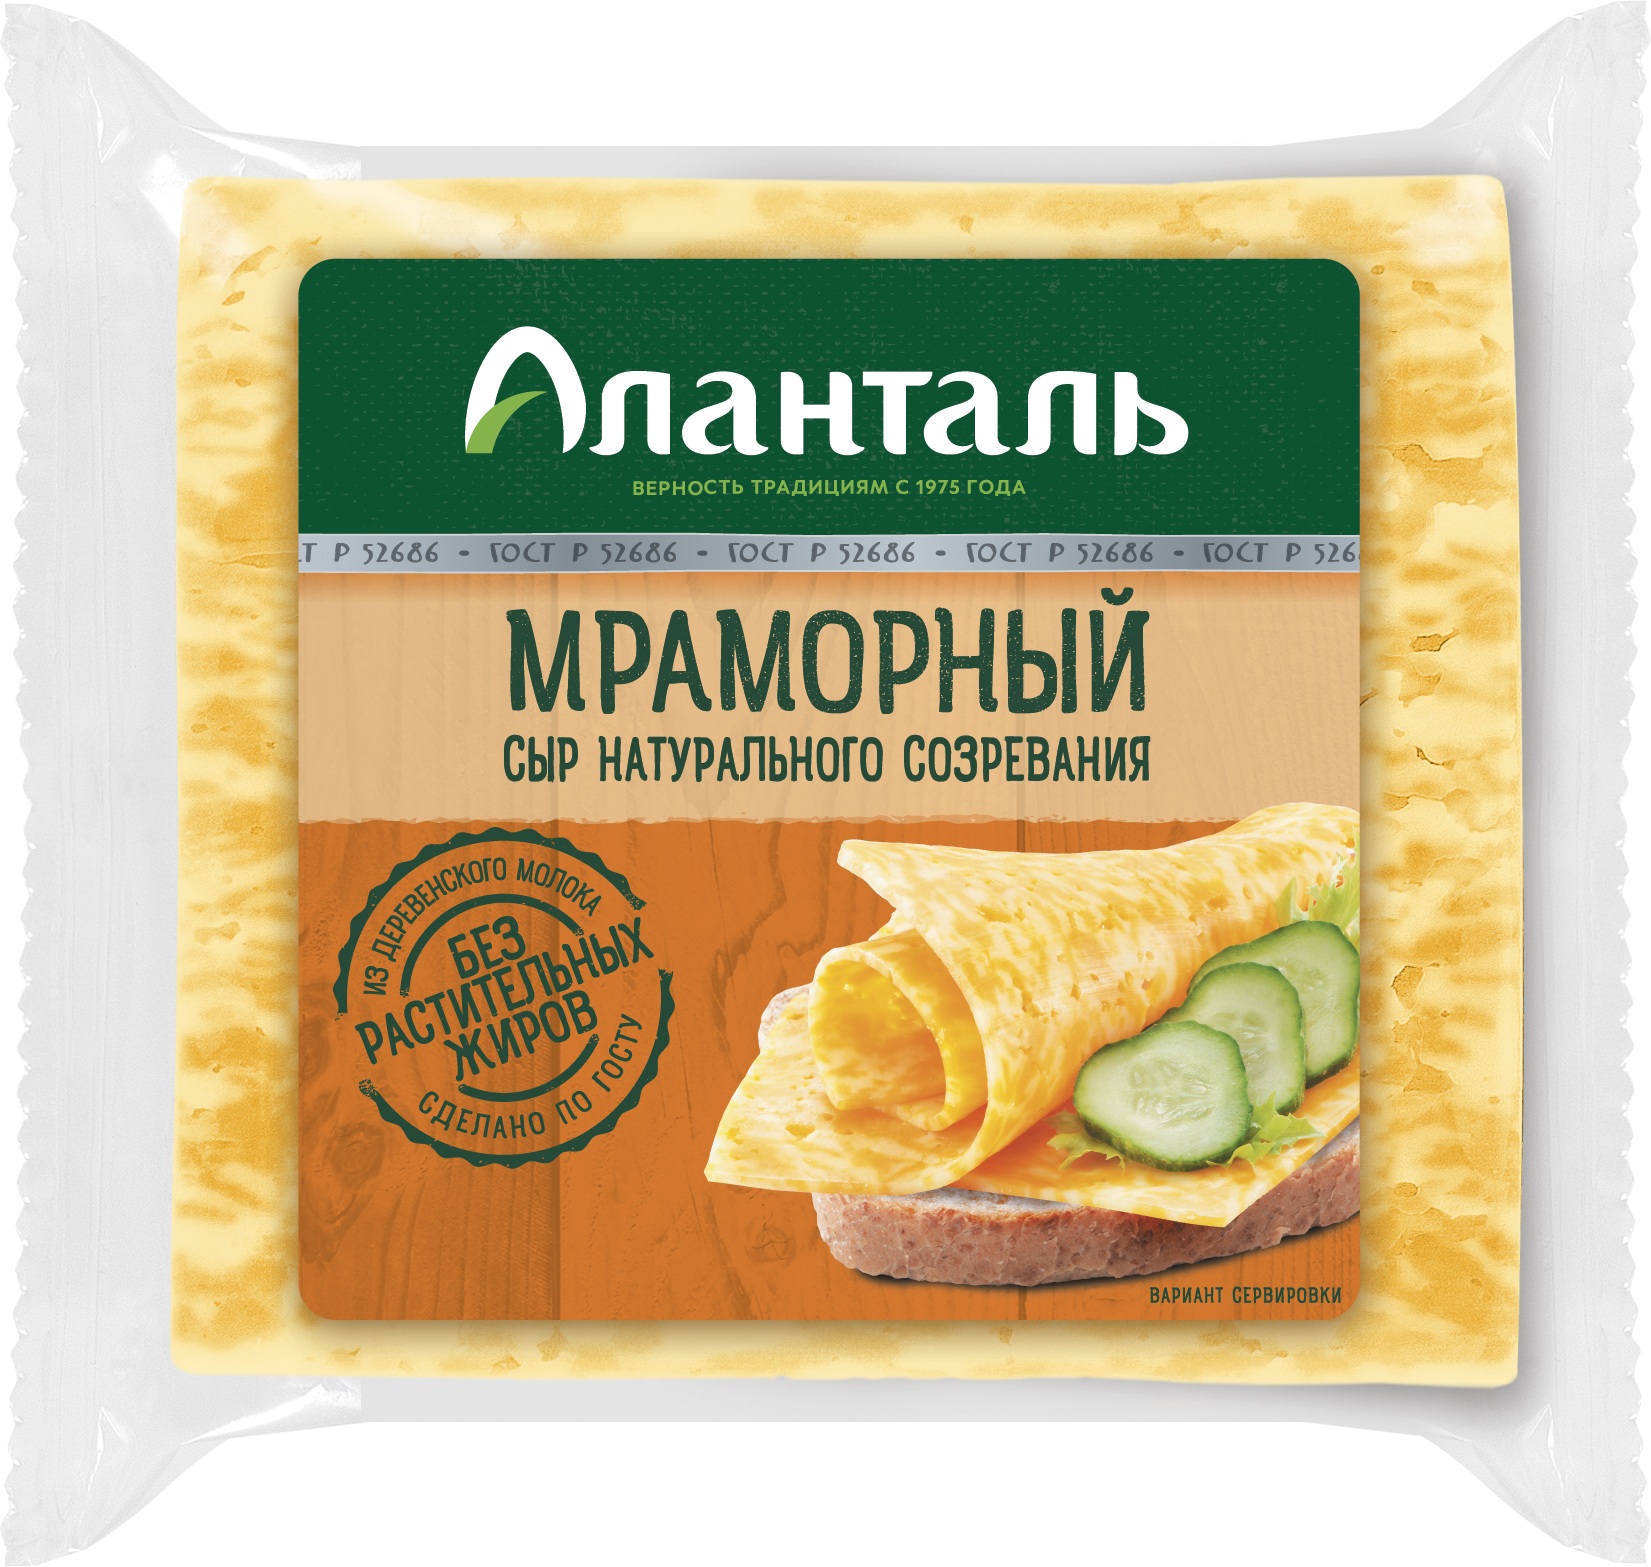 Сыр мраморный аланталь маслосырзавод порховский бзмж жир, 45 % ,ф/п, 200гр